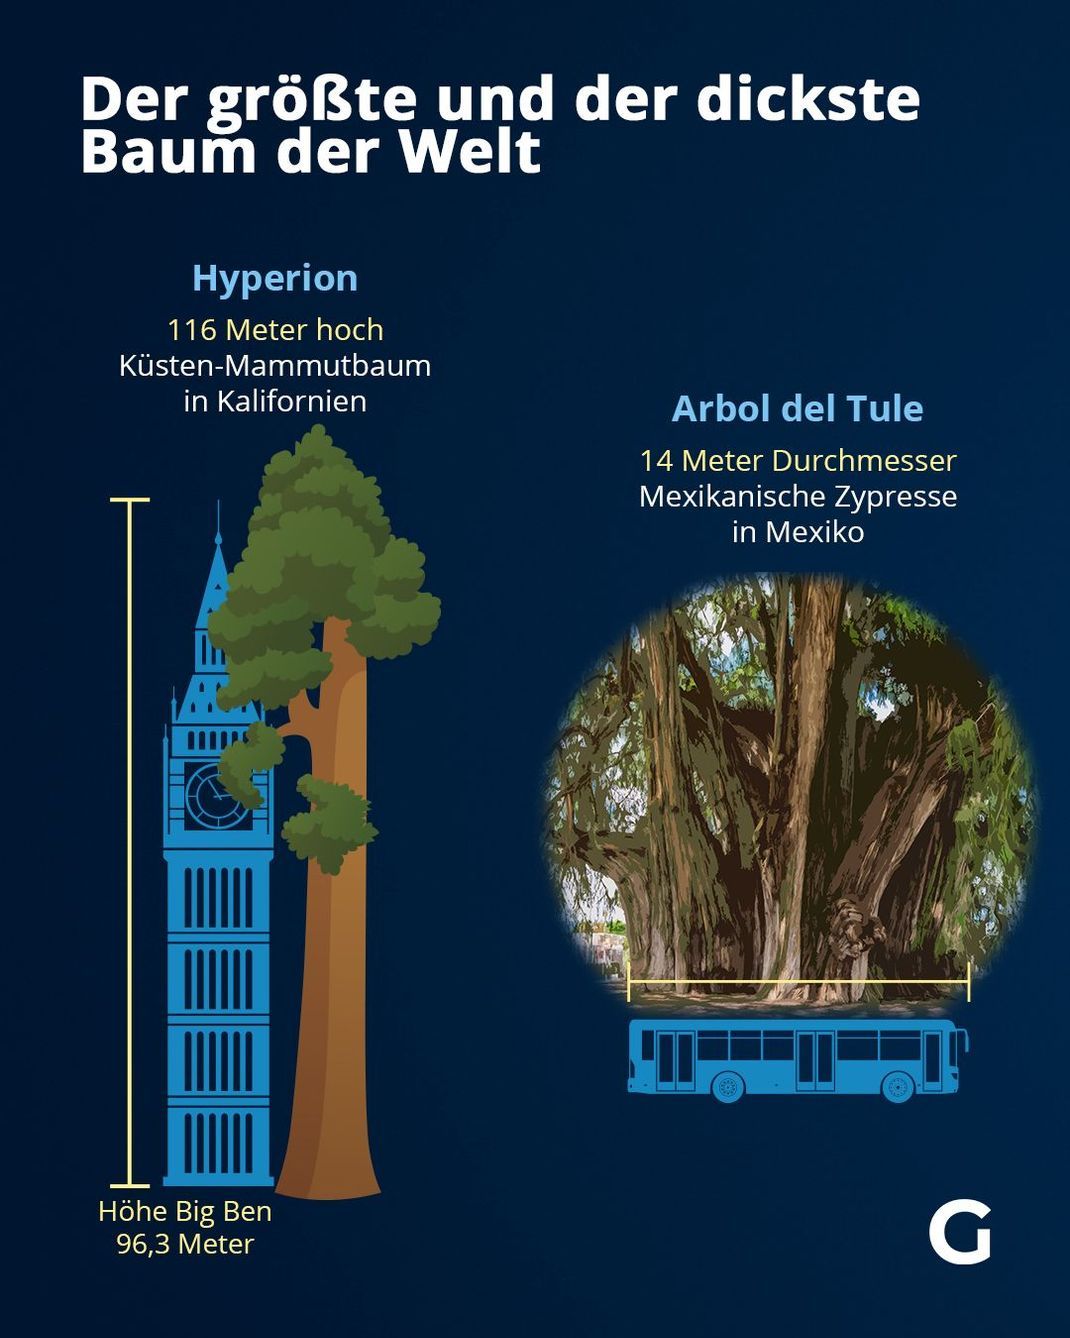 Der größte und der dickste Baum der Welt